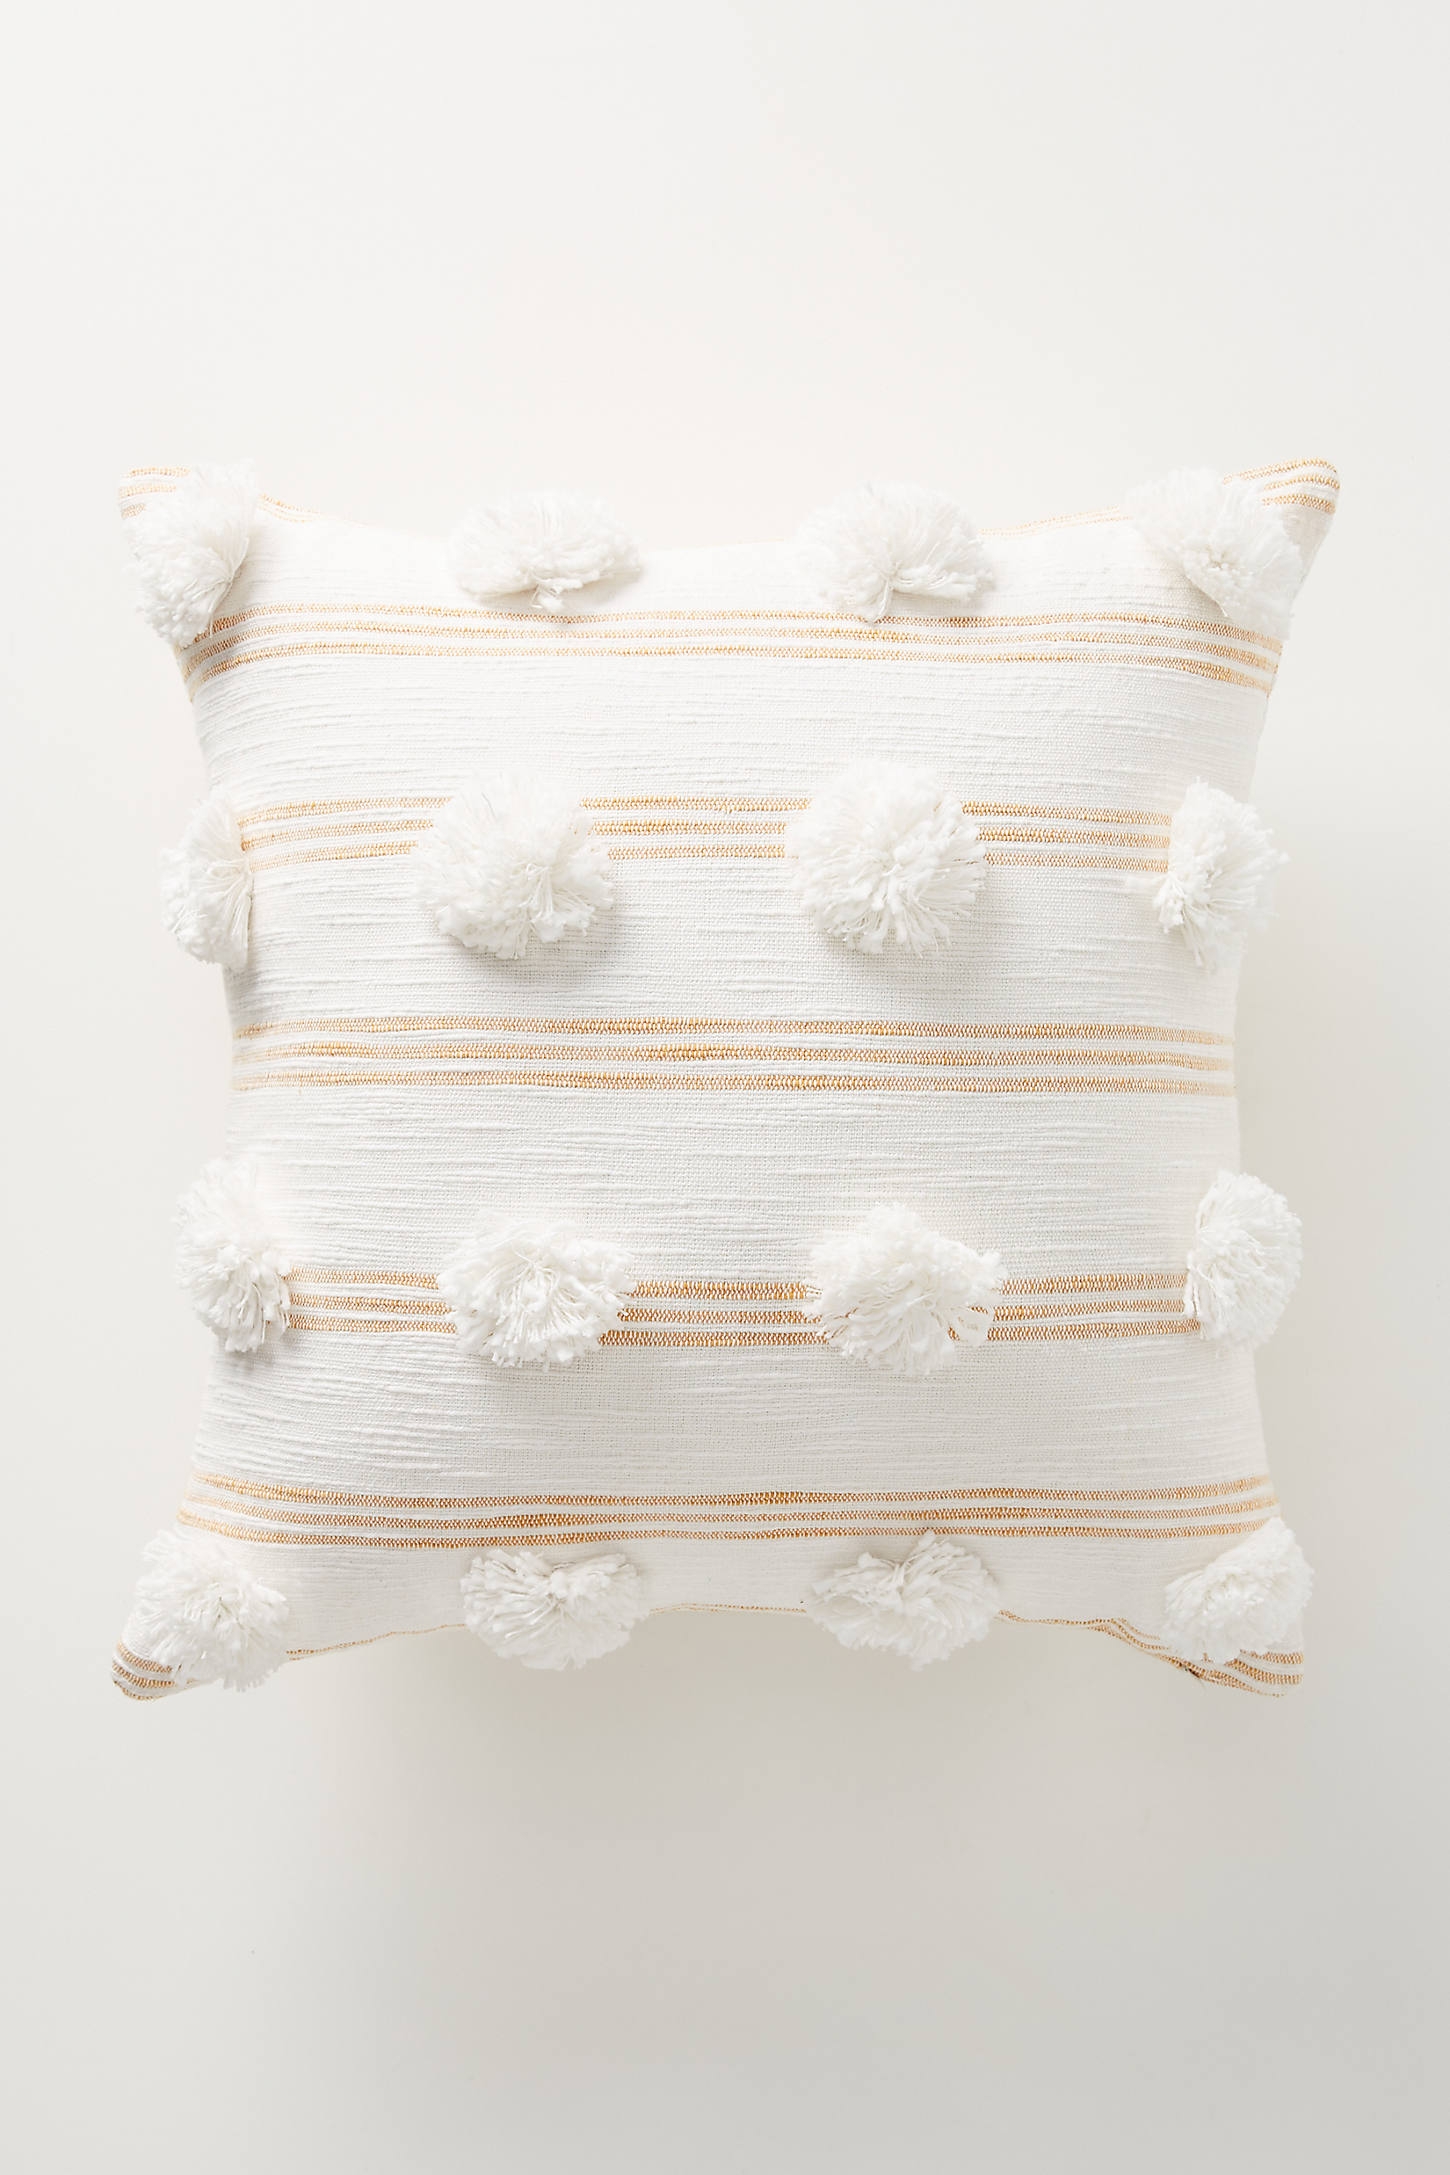 Pommed Felicity Pillow - Image 0